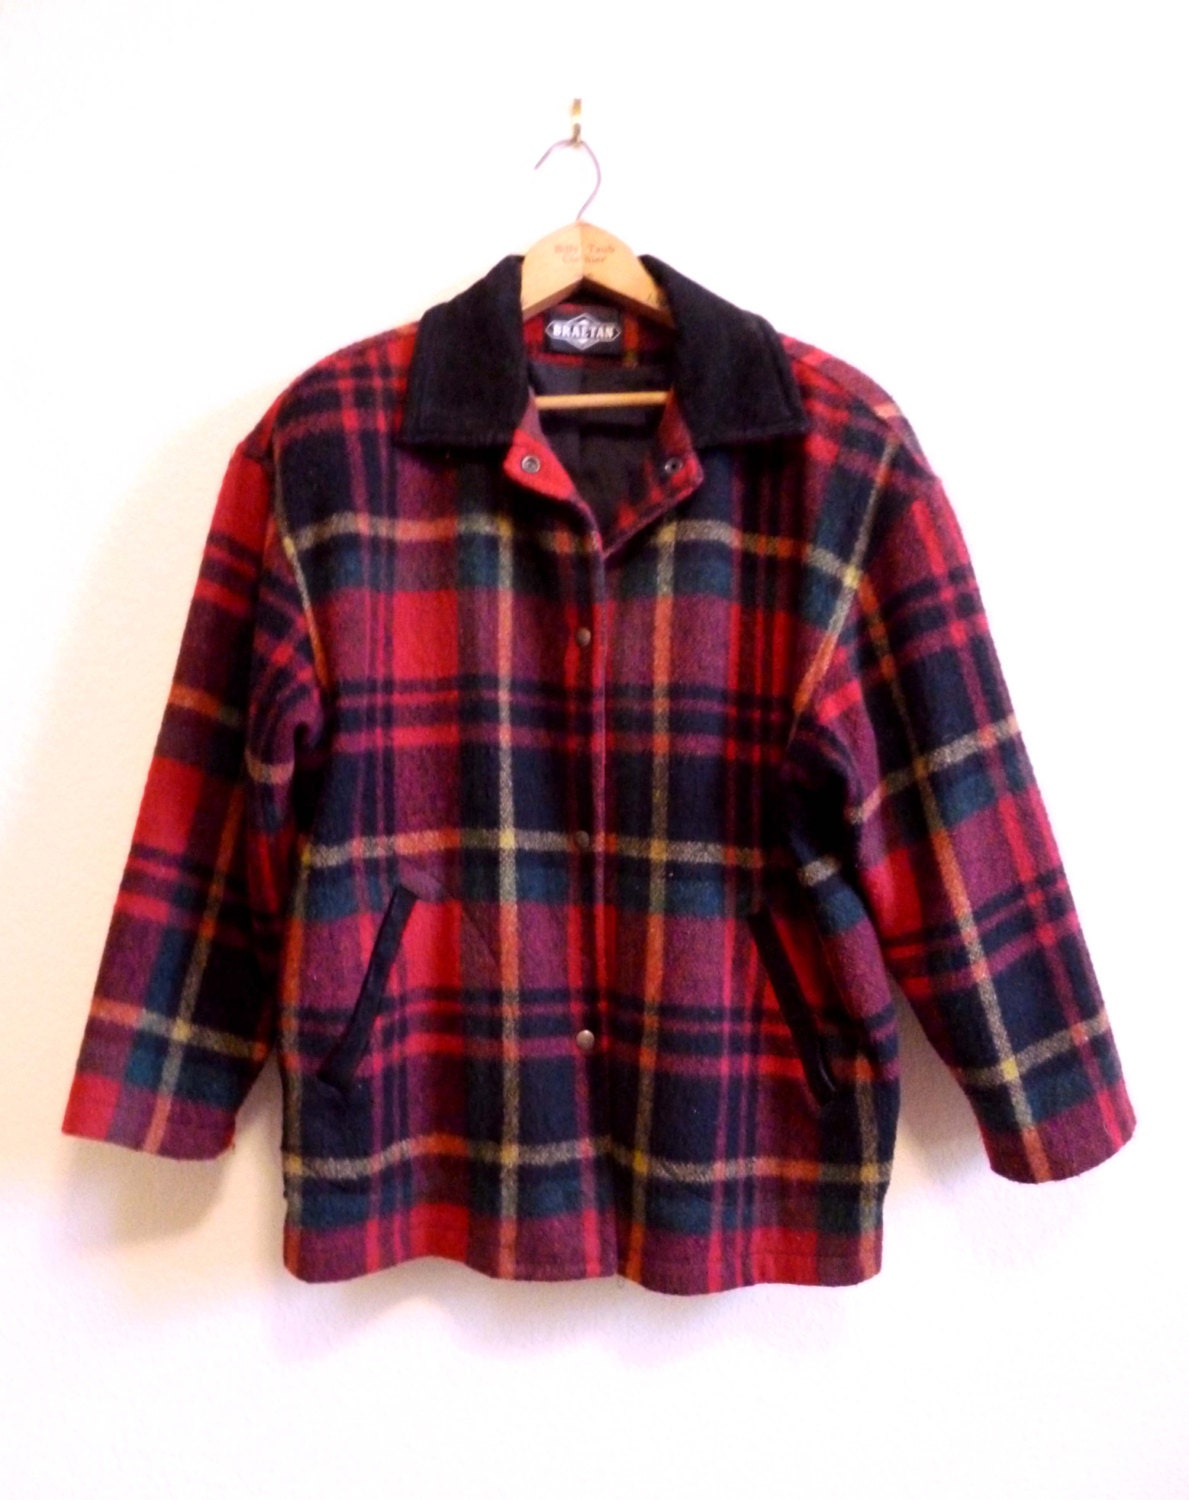 Red Flannel Plaid Coat Lumberjack Coat by VintageAndOddities